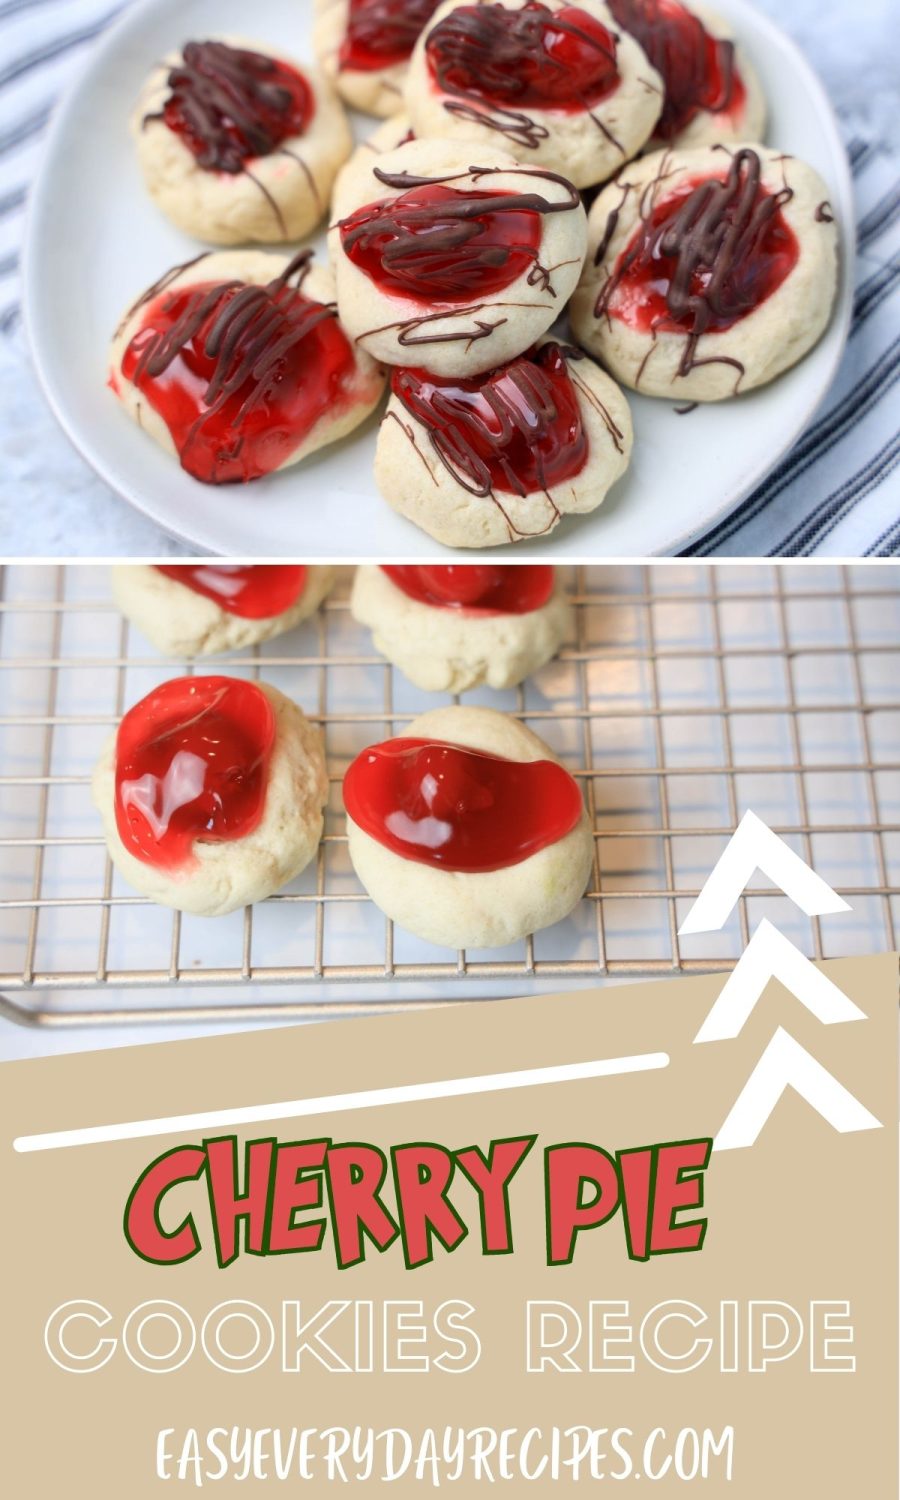 Cherry pie cookies recipe.